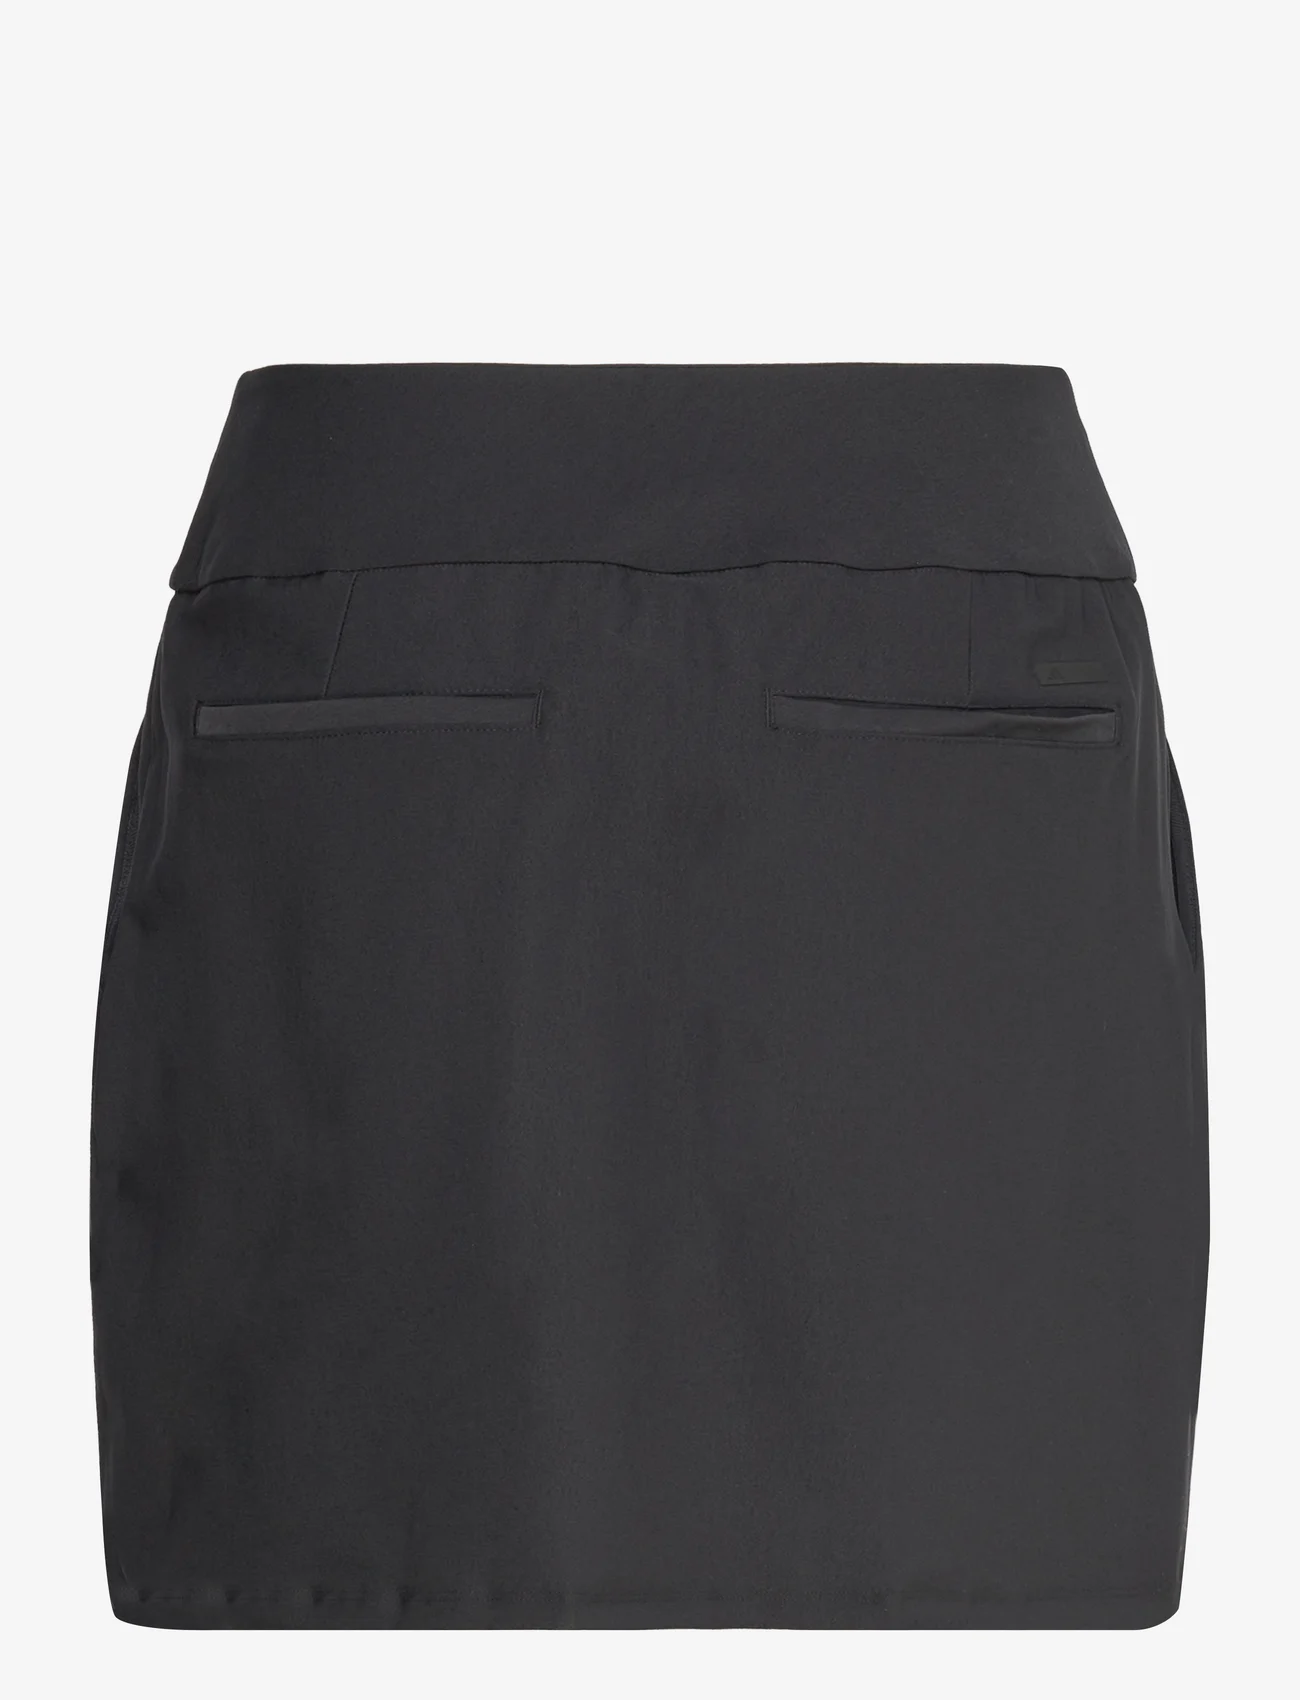 adidas Golf - W ULT C SKT - skirts - black - 1